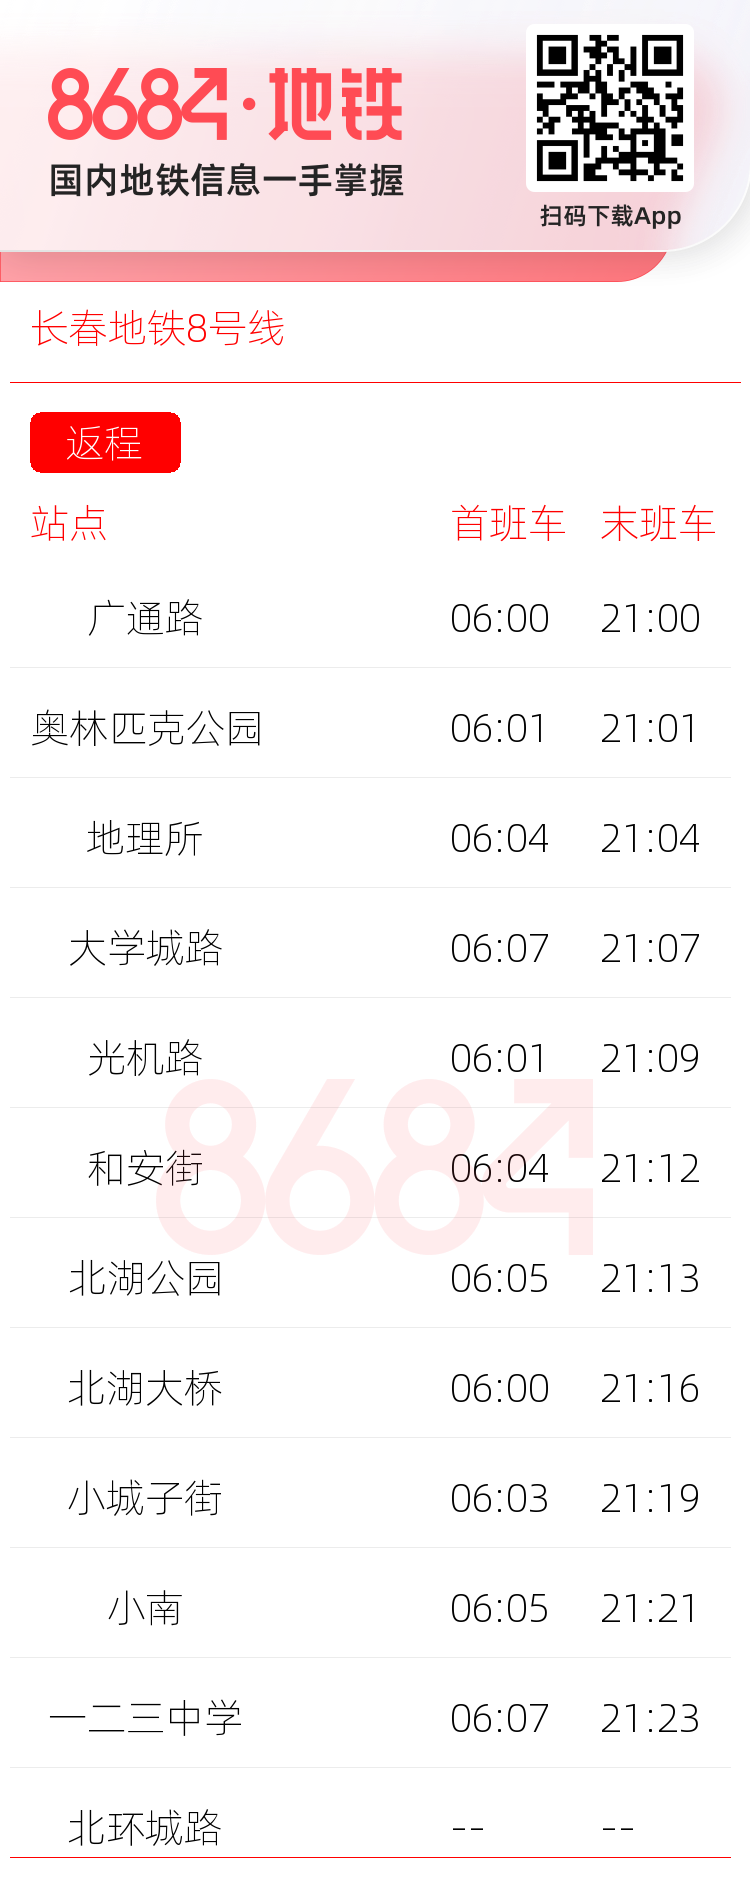 长春地铁8号线运营时间表